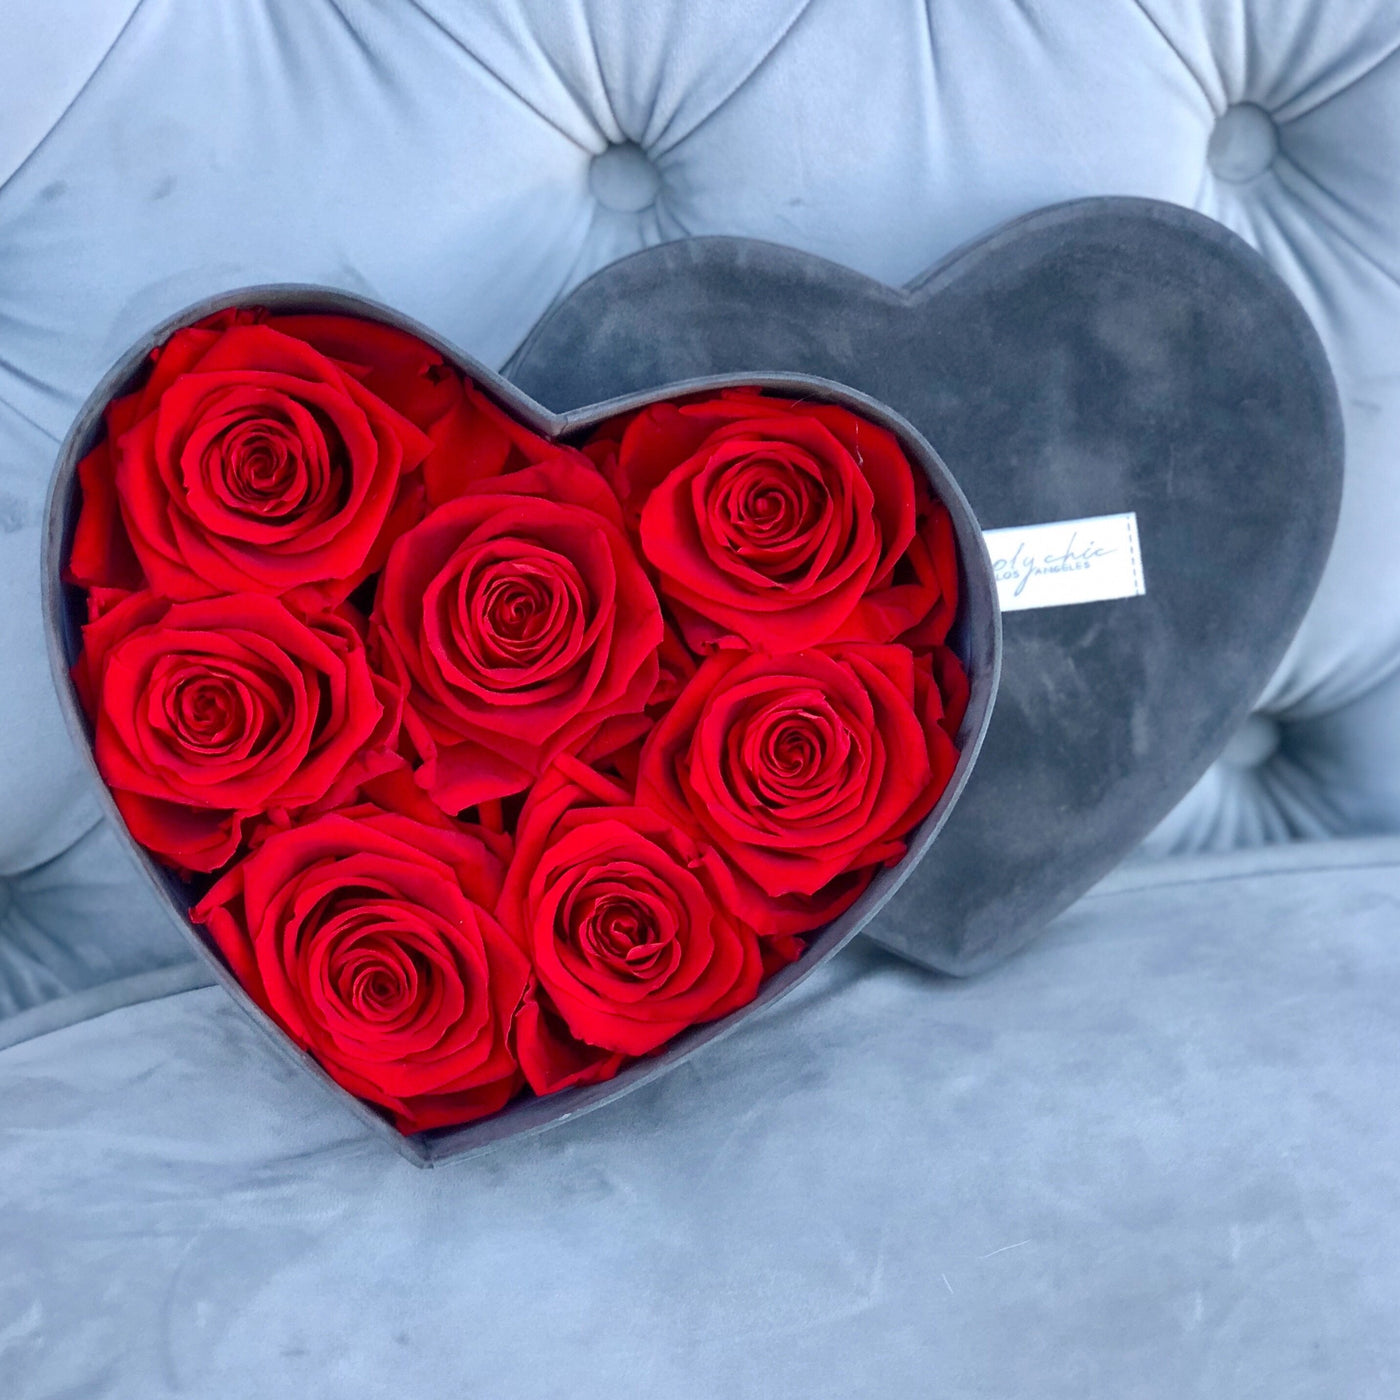 Preserved roses in a heart-shaped velvet hat box